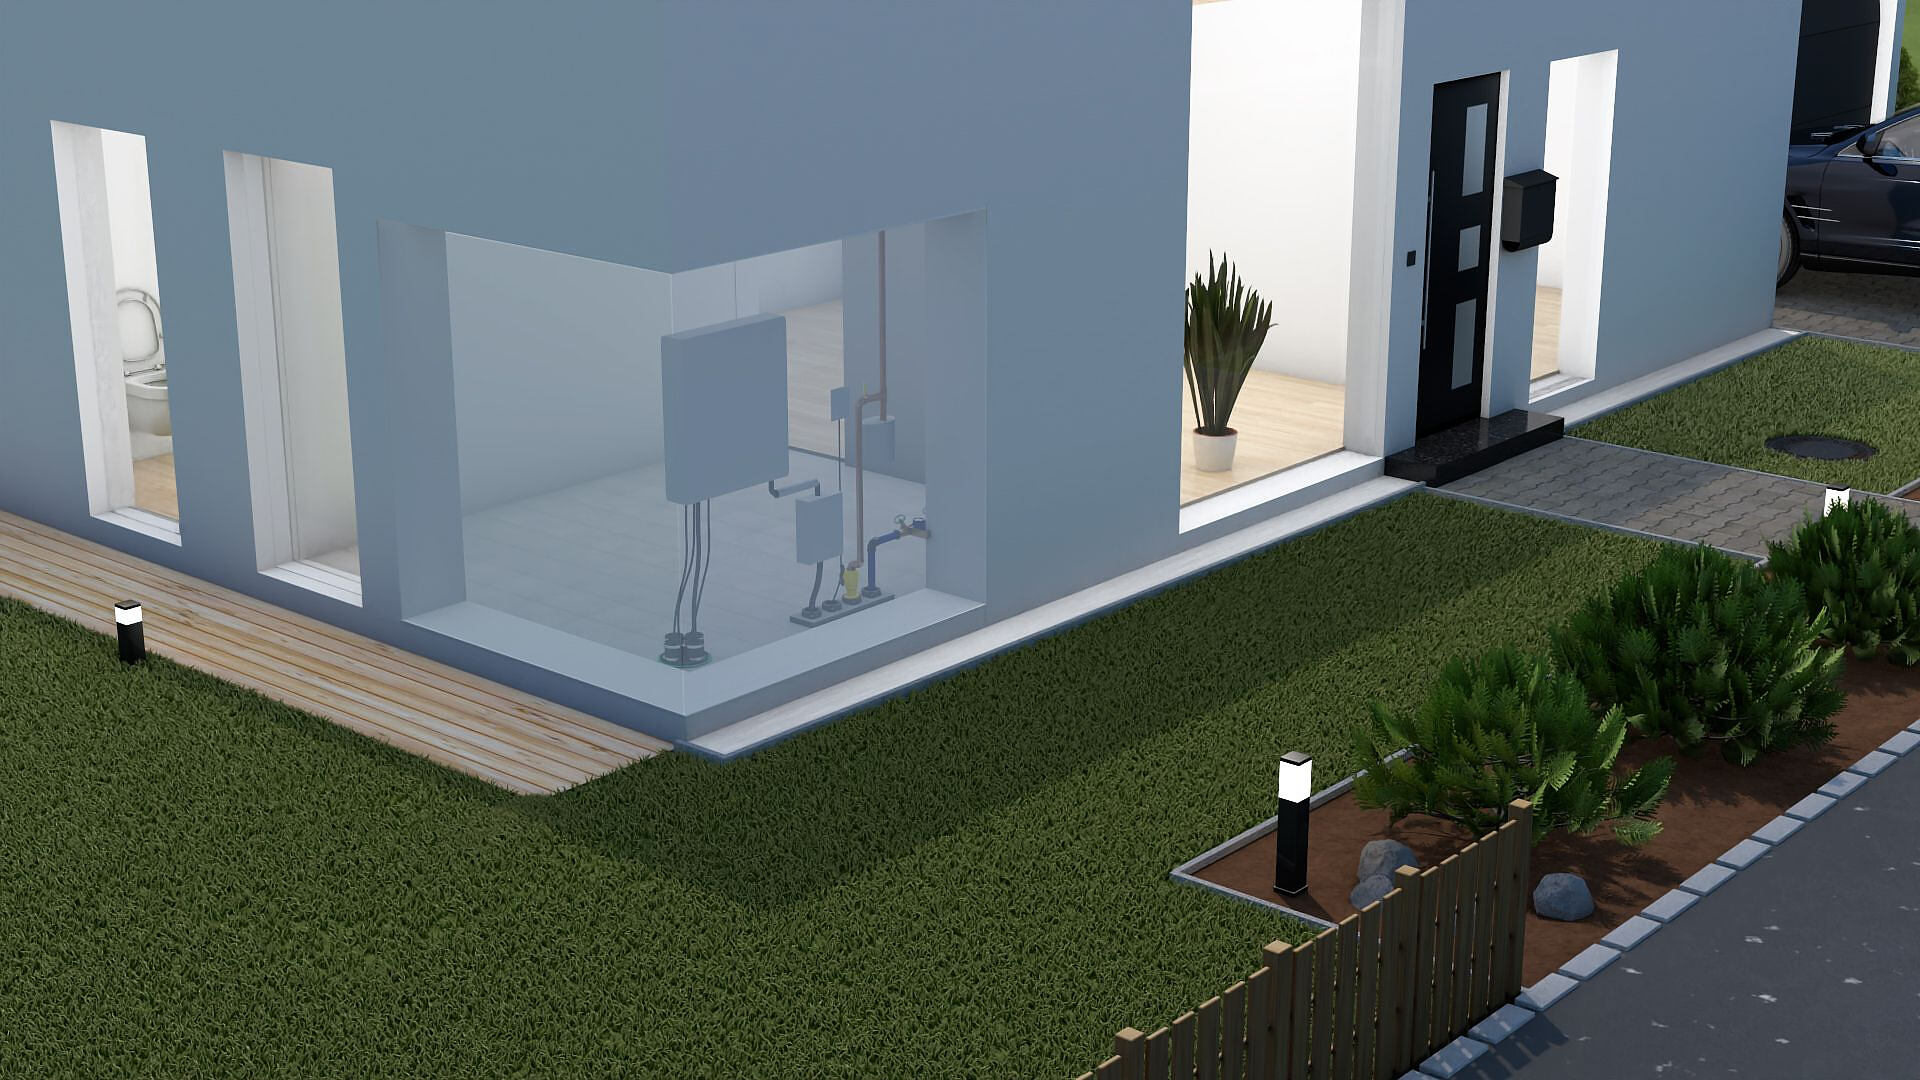 Haus und Garten von außen, Wand leicht transparent, dadurch Mehrspartenhauseinführung FUBO zu sehen